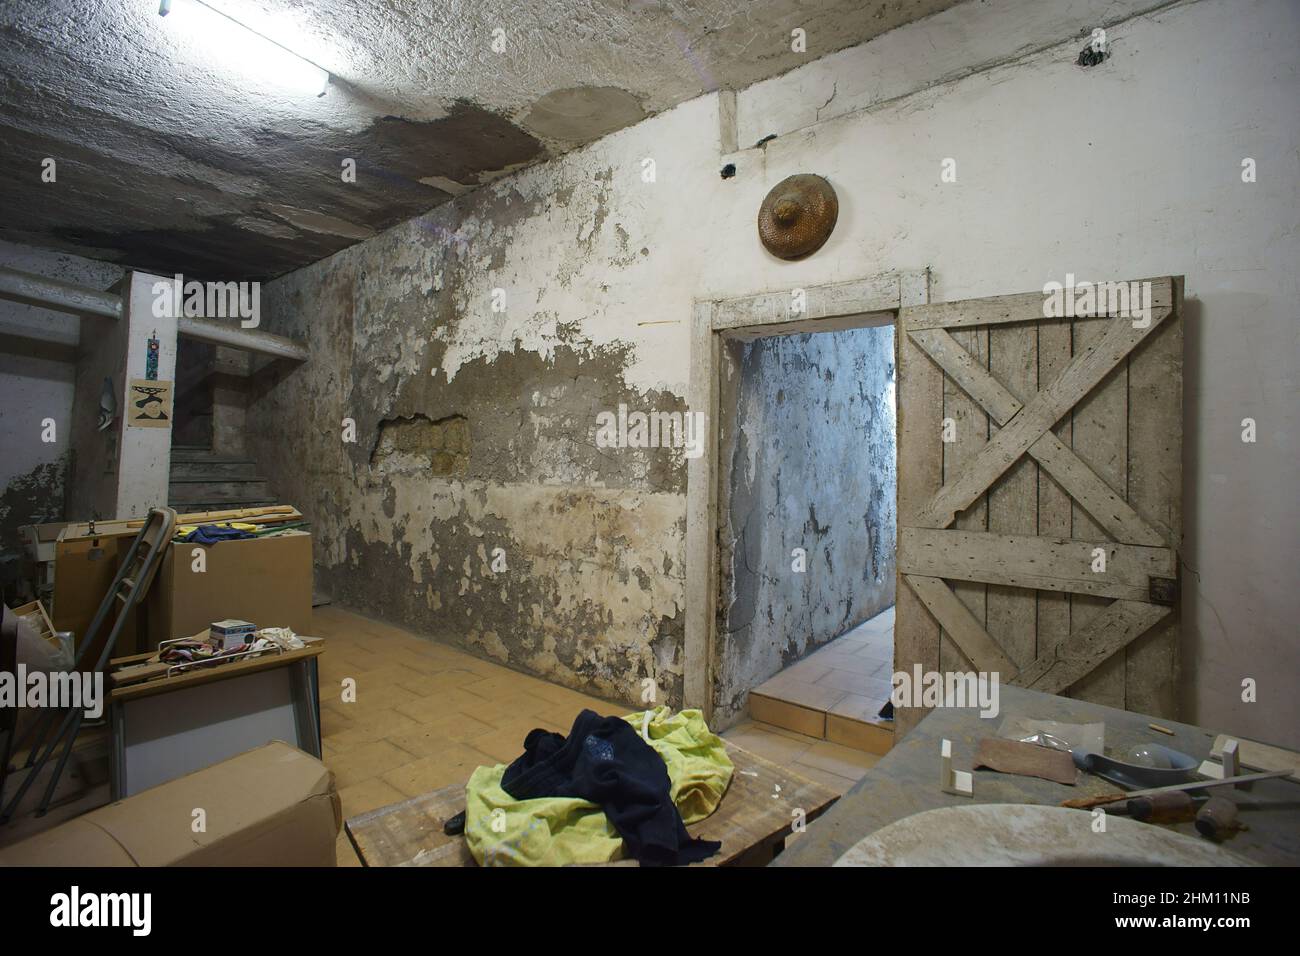 Les chambres sont endommagées par des infiltrations d'eau dans les murs Banque D'Images